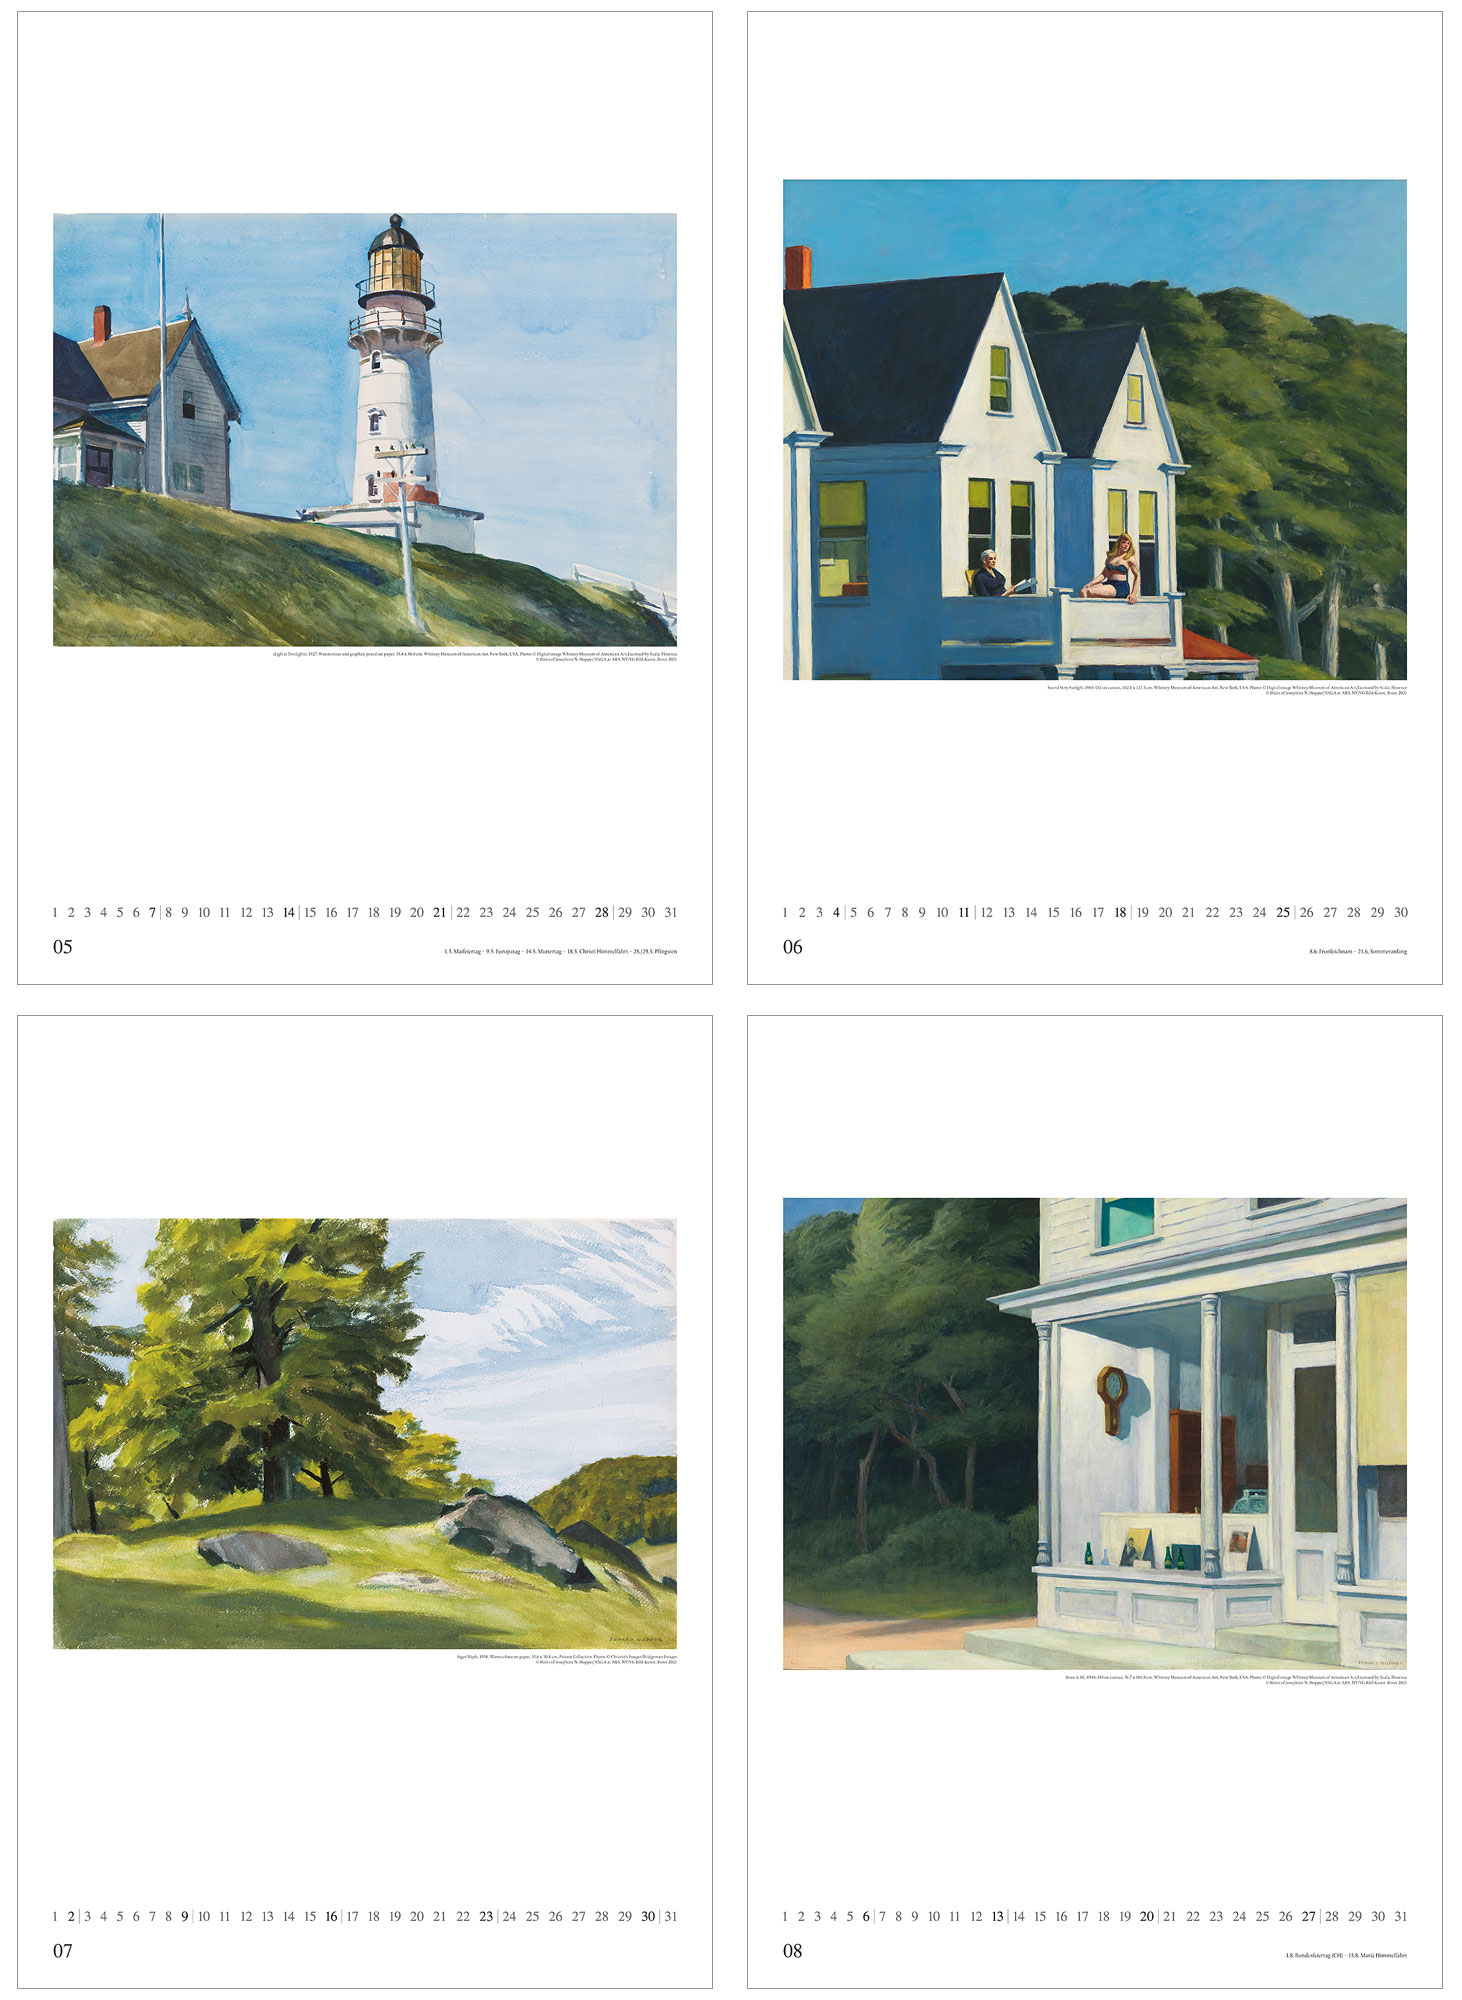 Künstlerkalender 2023 von Edward Hopper